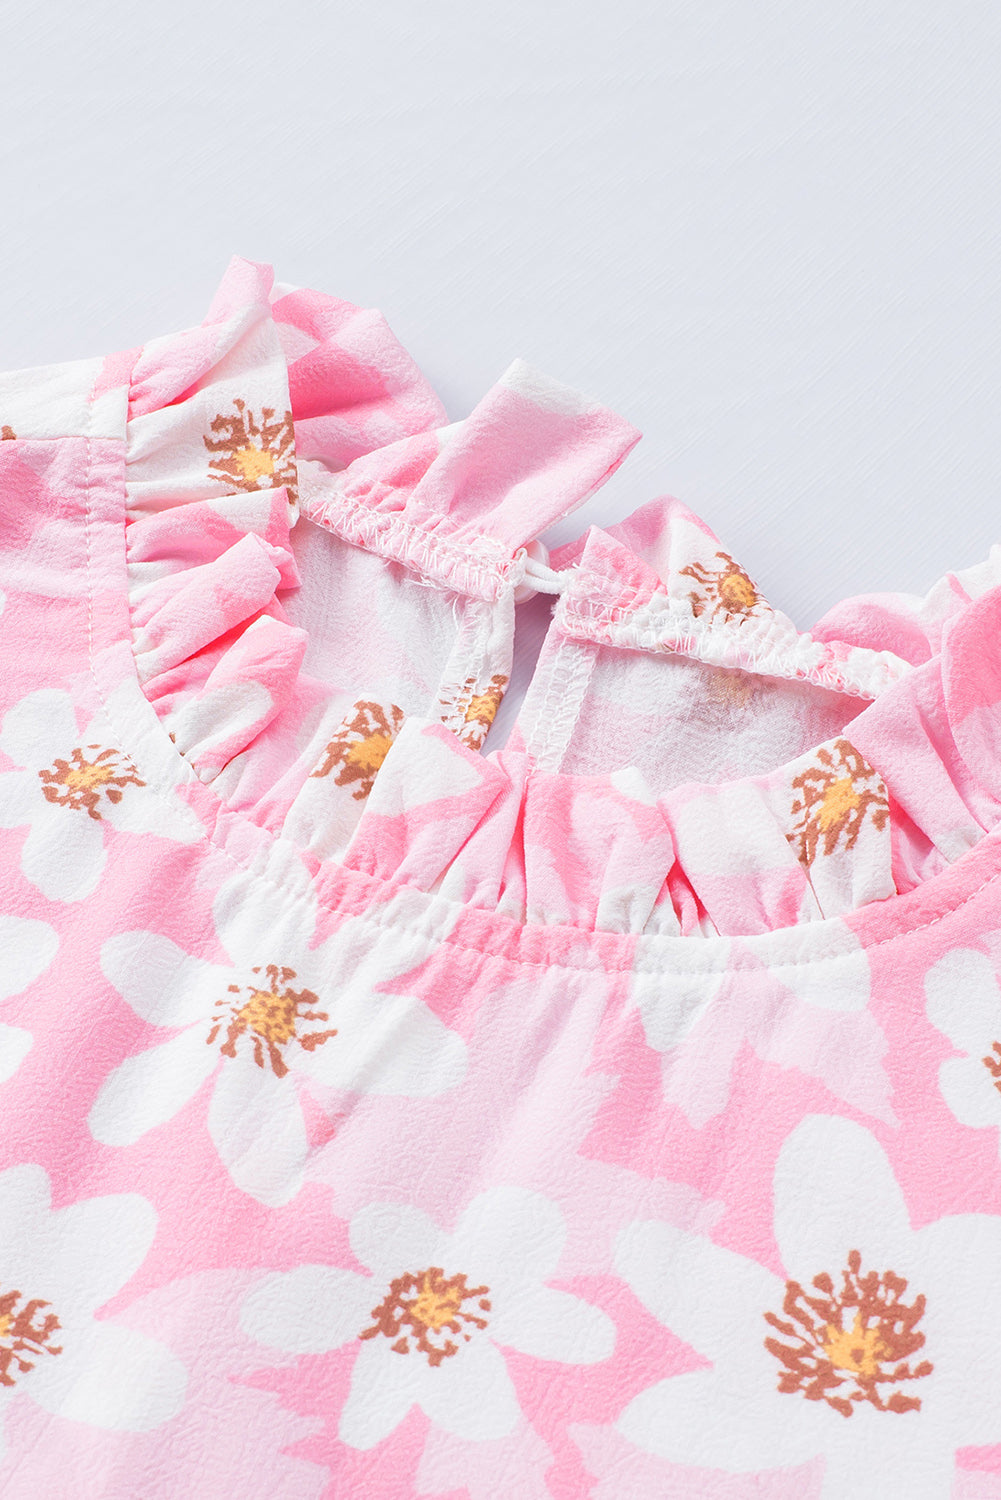 Rožnata bluza z naborki in sladkim cvetličnim vzorcem